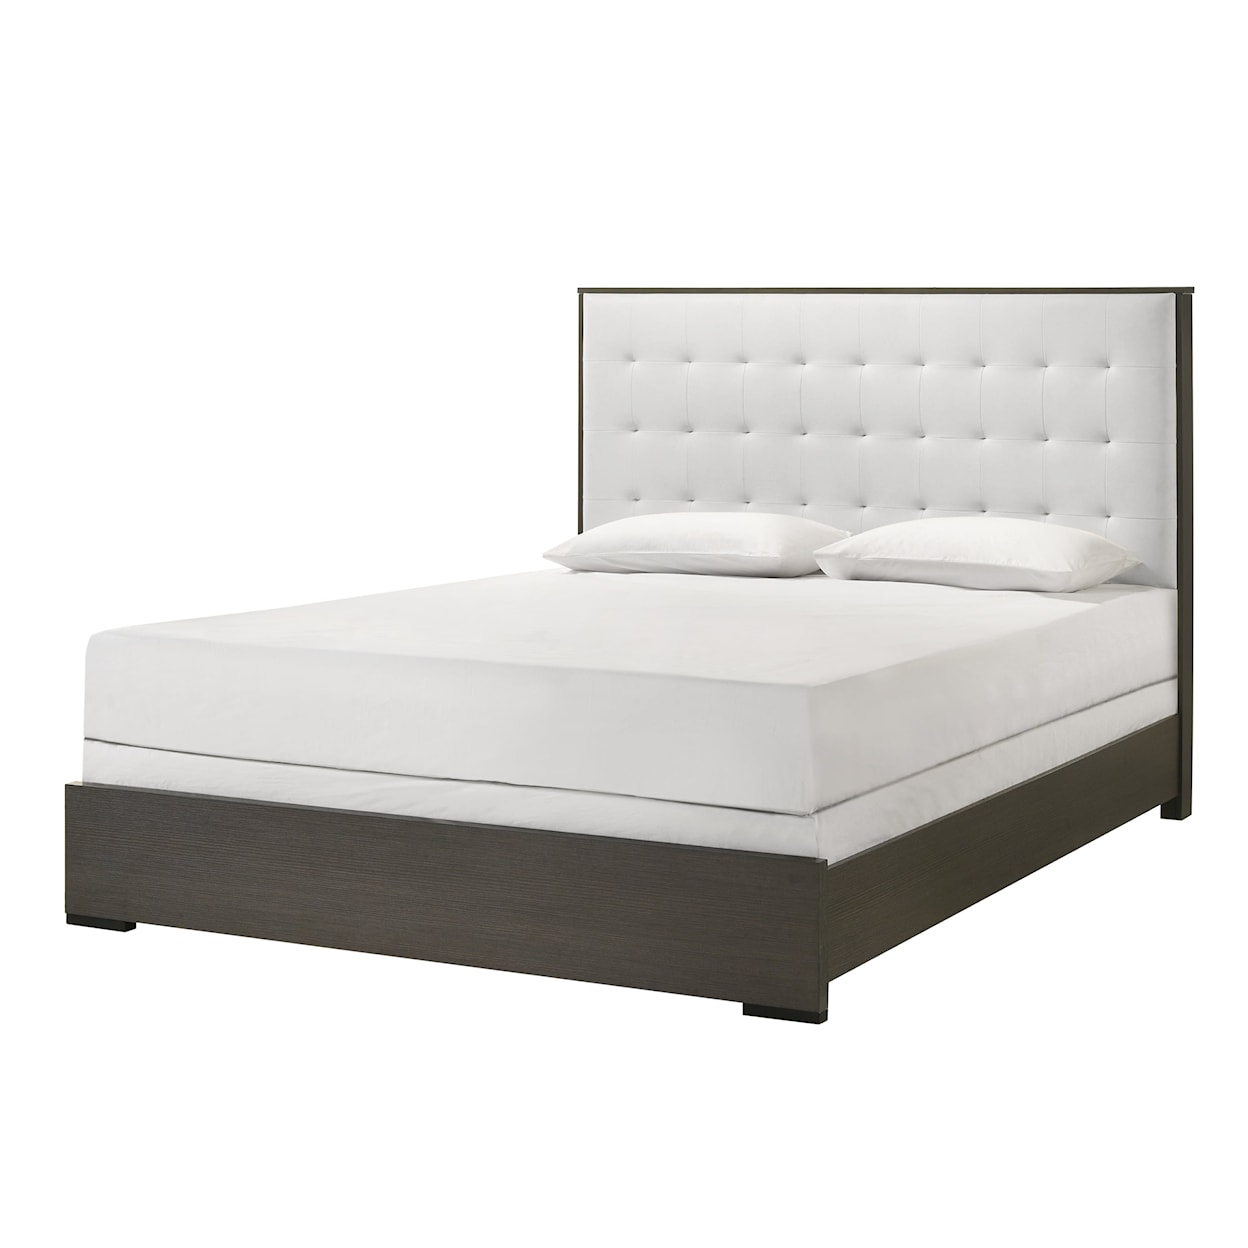 CM SHARPE Full Upholstered Bed